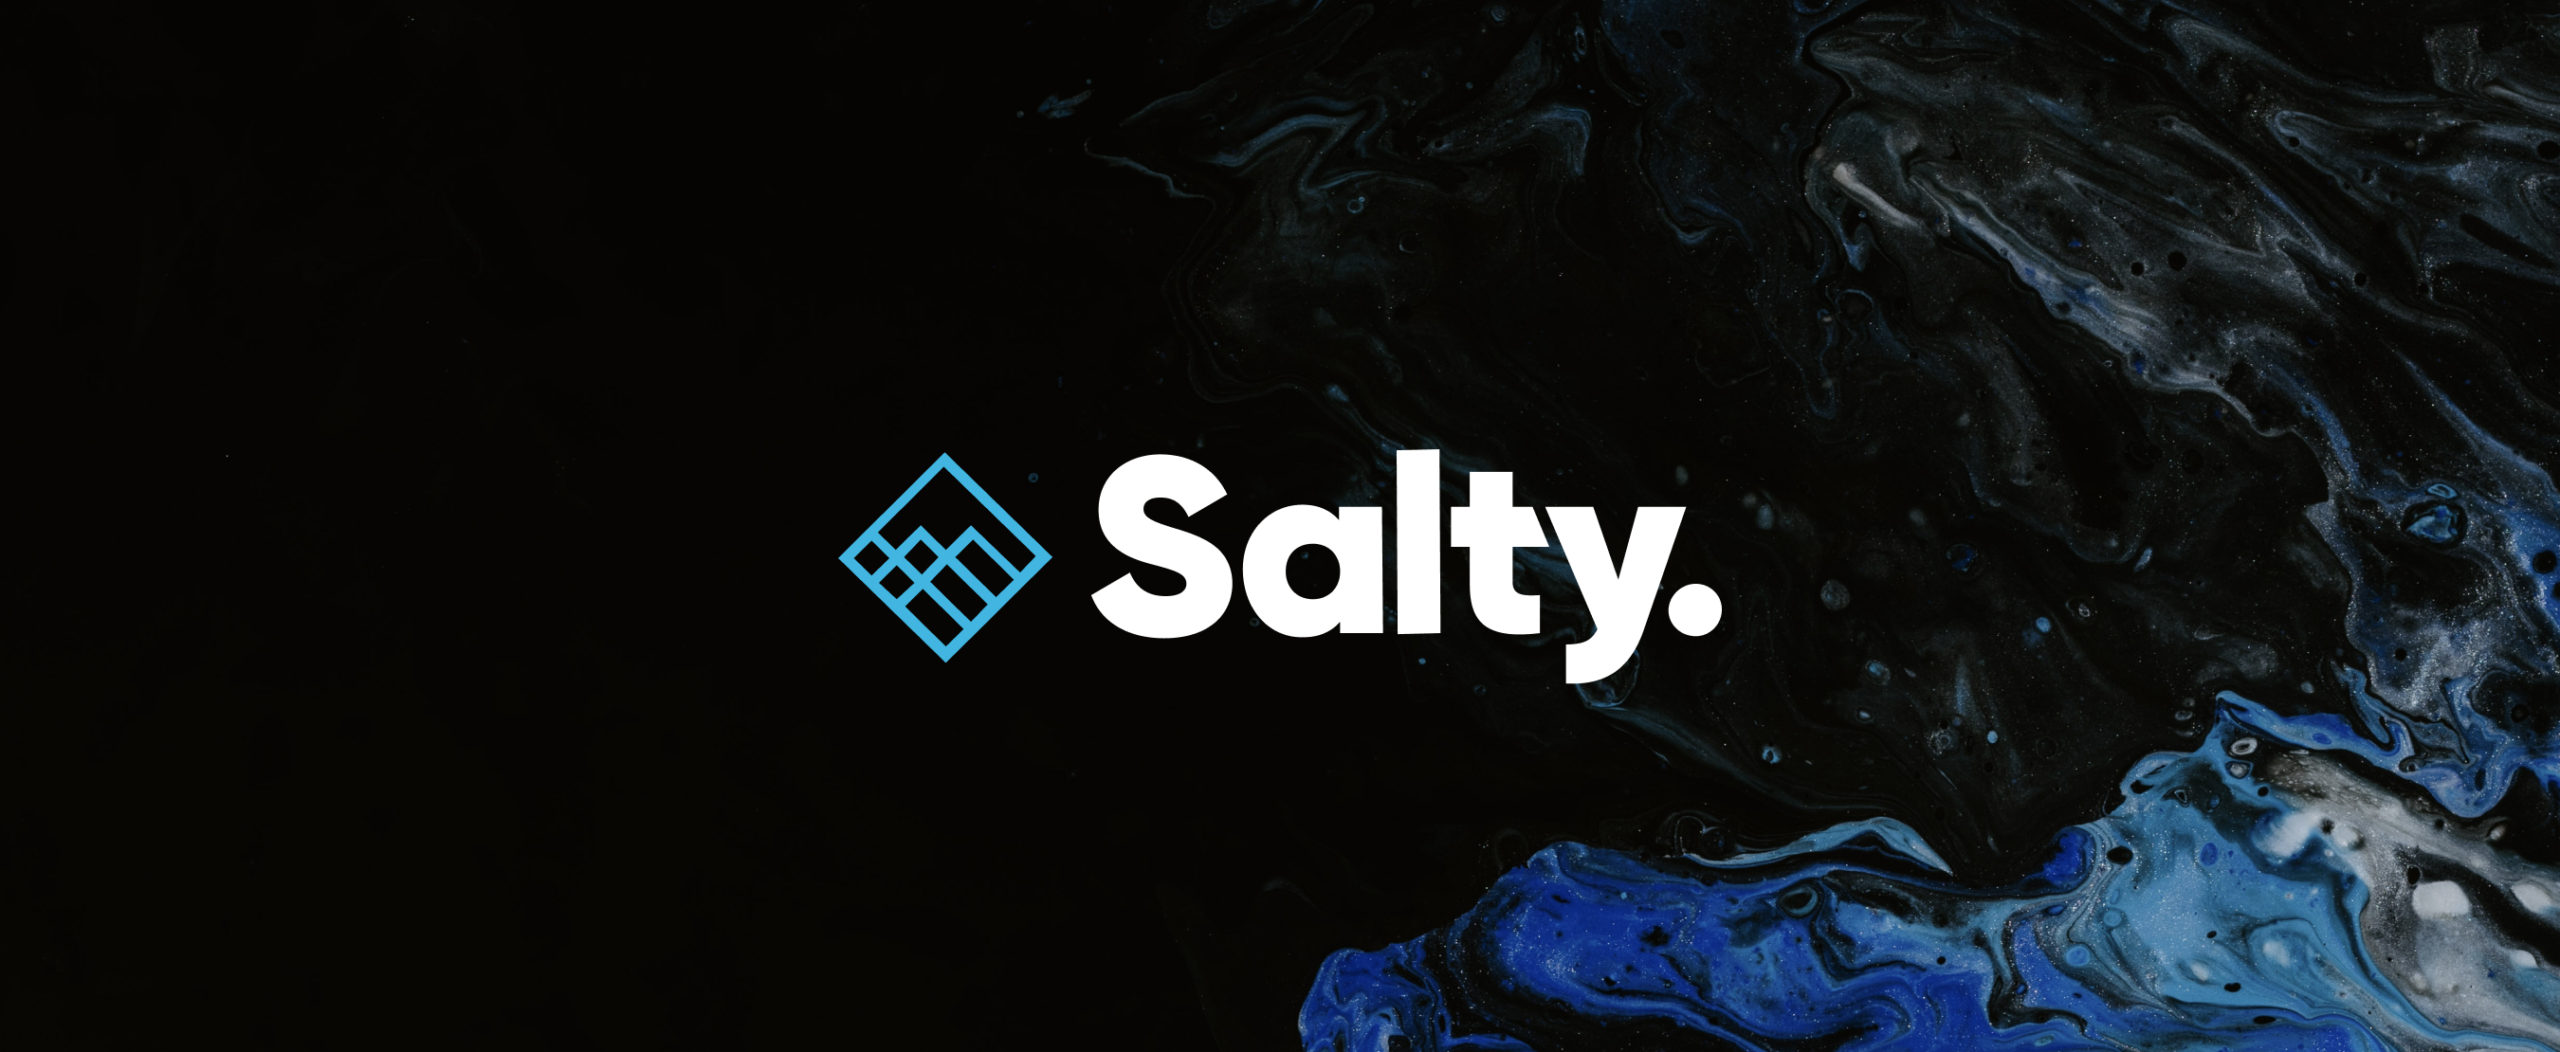 salty2